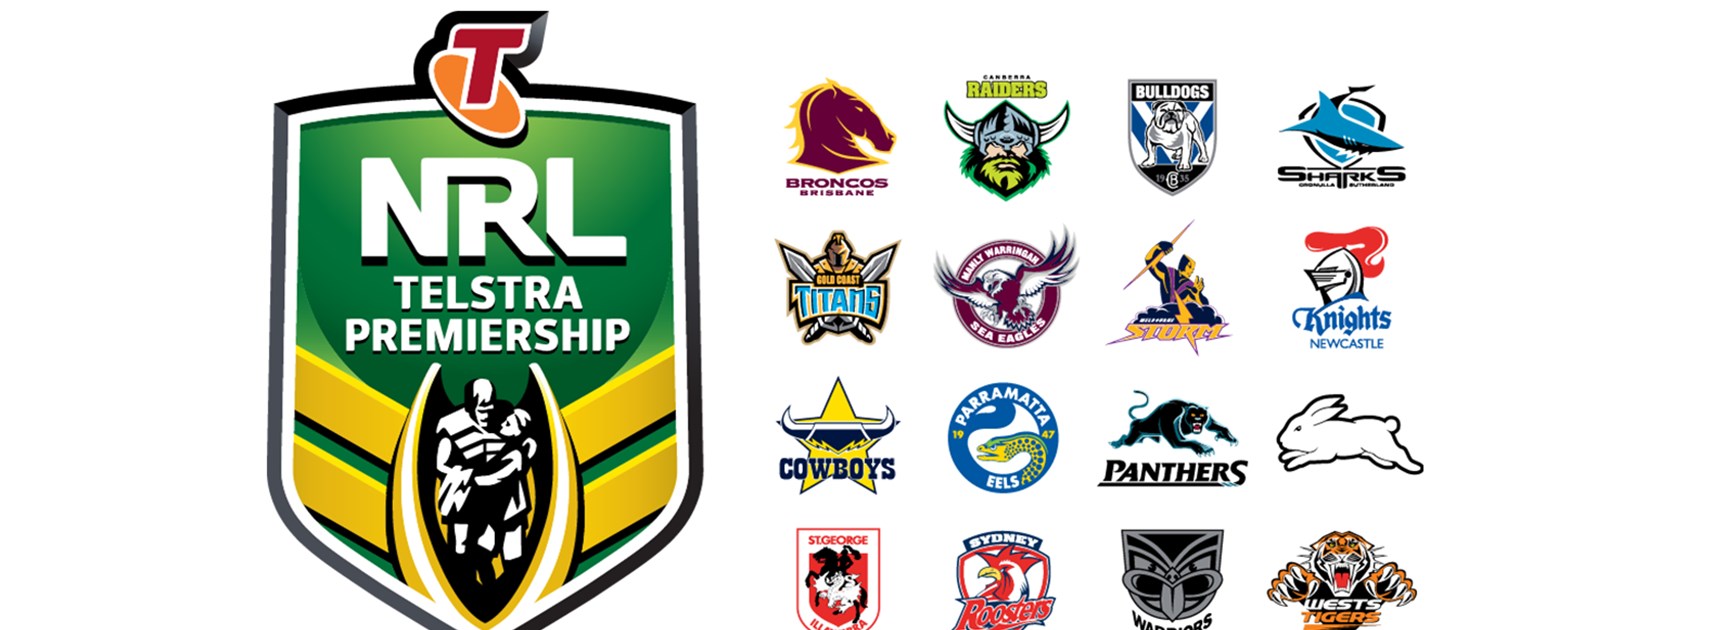 NRL Telstra Premiership logo and the 16 NRL club logos.